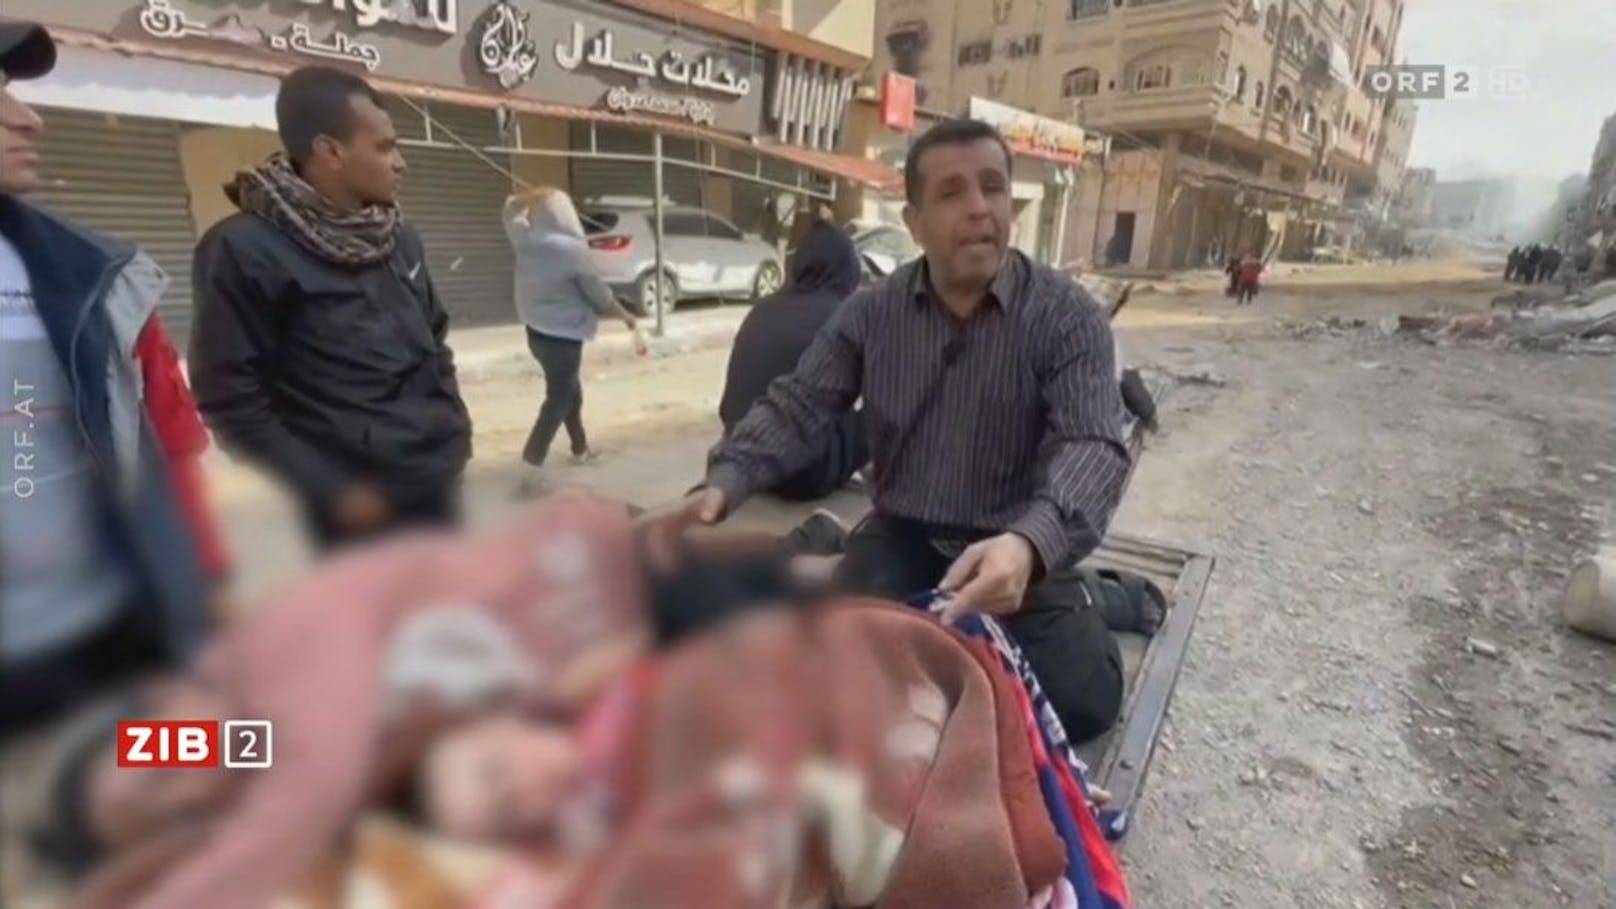 Eine "lebendige Leiche" sorgt in der ORF ZIB2 für Irritationen. Ein Video aus dem Gazastreifen zeigt einen wehklagenden Mann über den Körpern einer Frau und eines Mädchens.